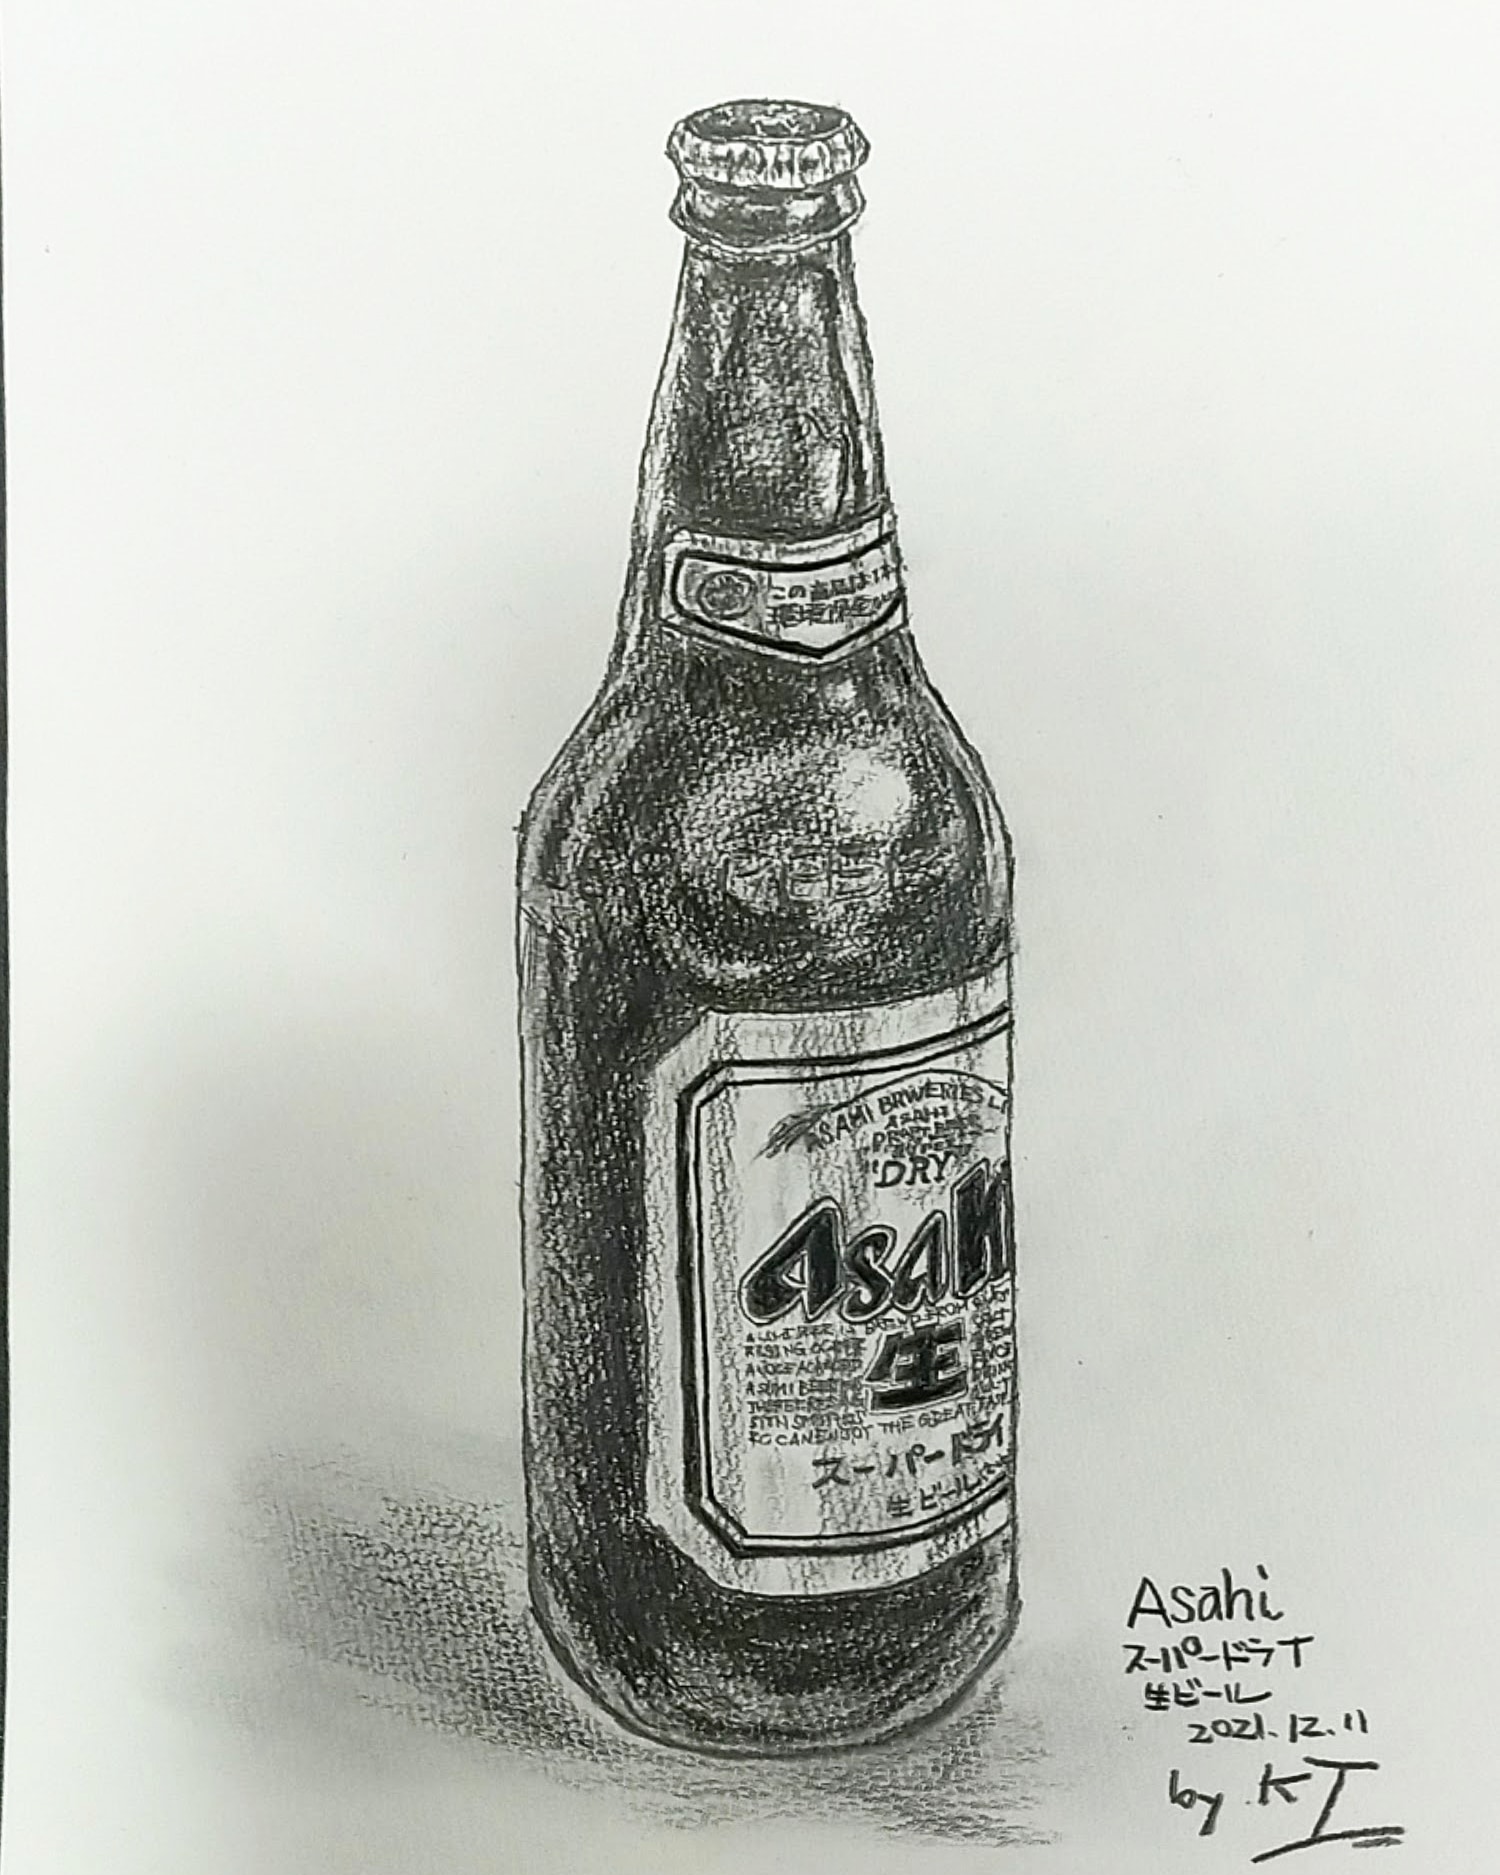 T Kouji0114 瓶ビール スーパードライ 鉛筆で描いてみた 鉛筆画 デッサン イラスト好きな人とつながりたい そっくり 絵描きさんとつながりたい 色鉛筆画 T Co 3dxlpntxpr Twitter